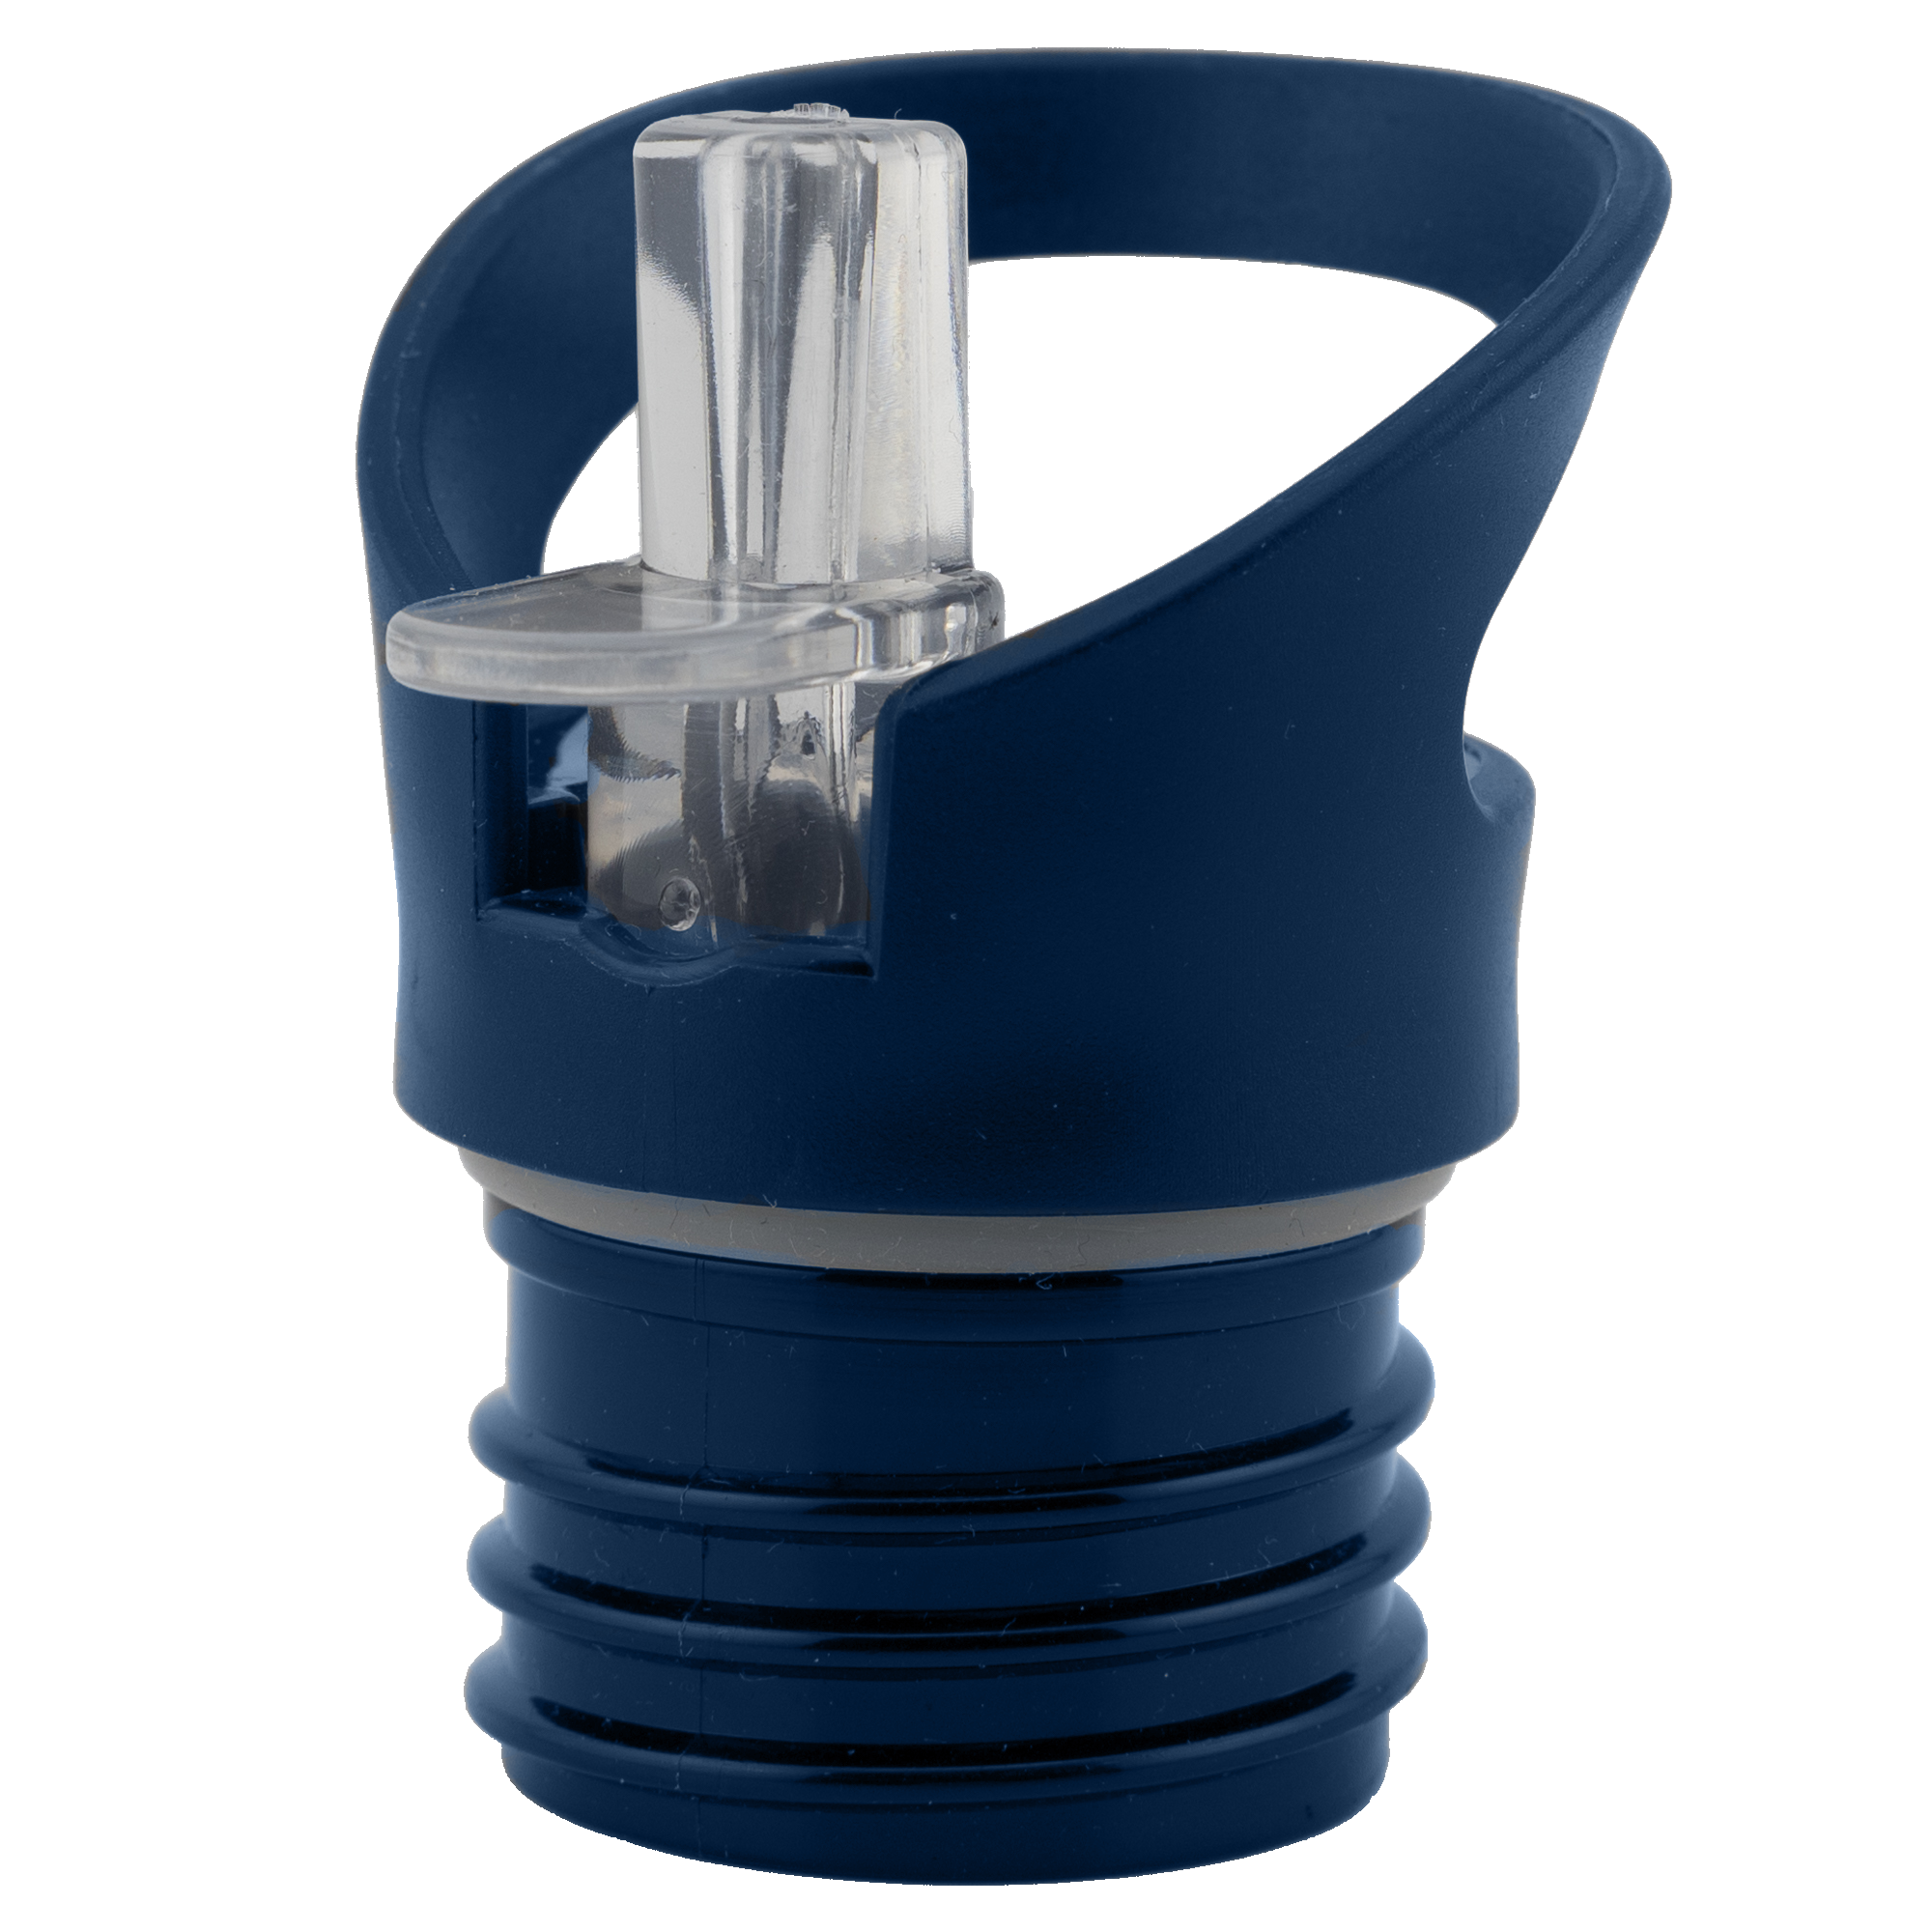 Trinkaufsatz mit Strohhalm für Edelstahltrinkflaschen - Durchmesser 4,5cm - dunkelblau